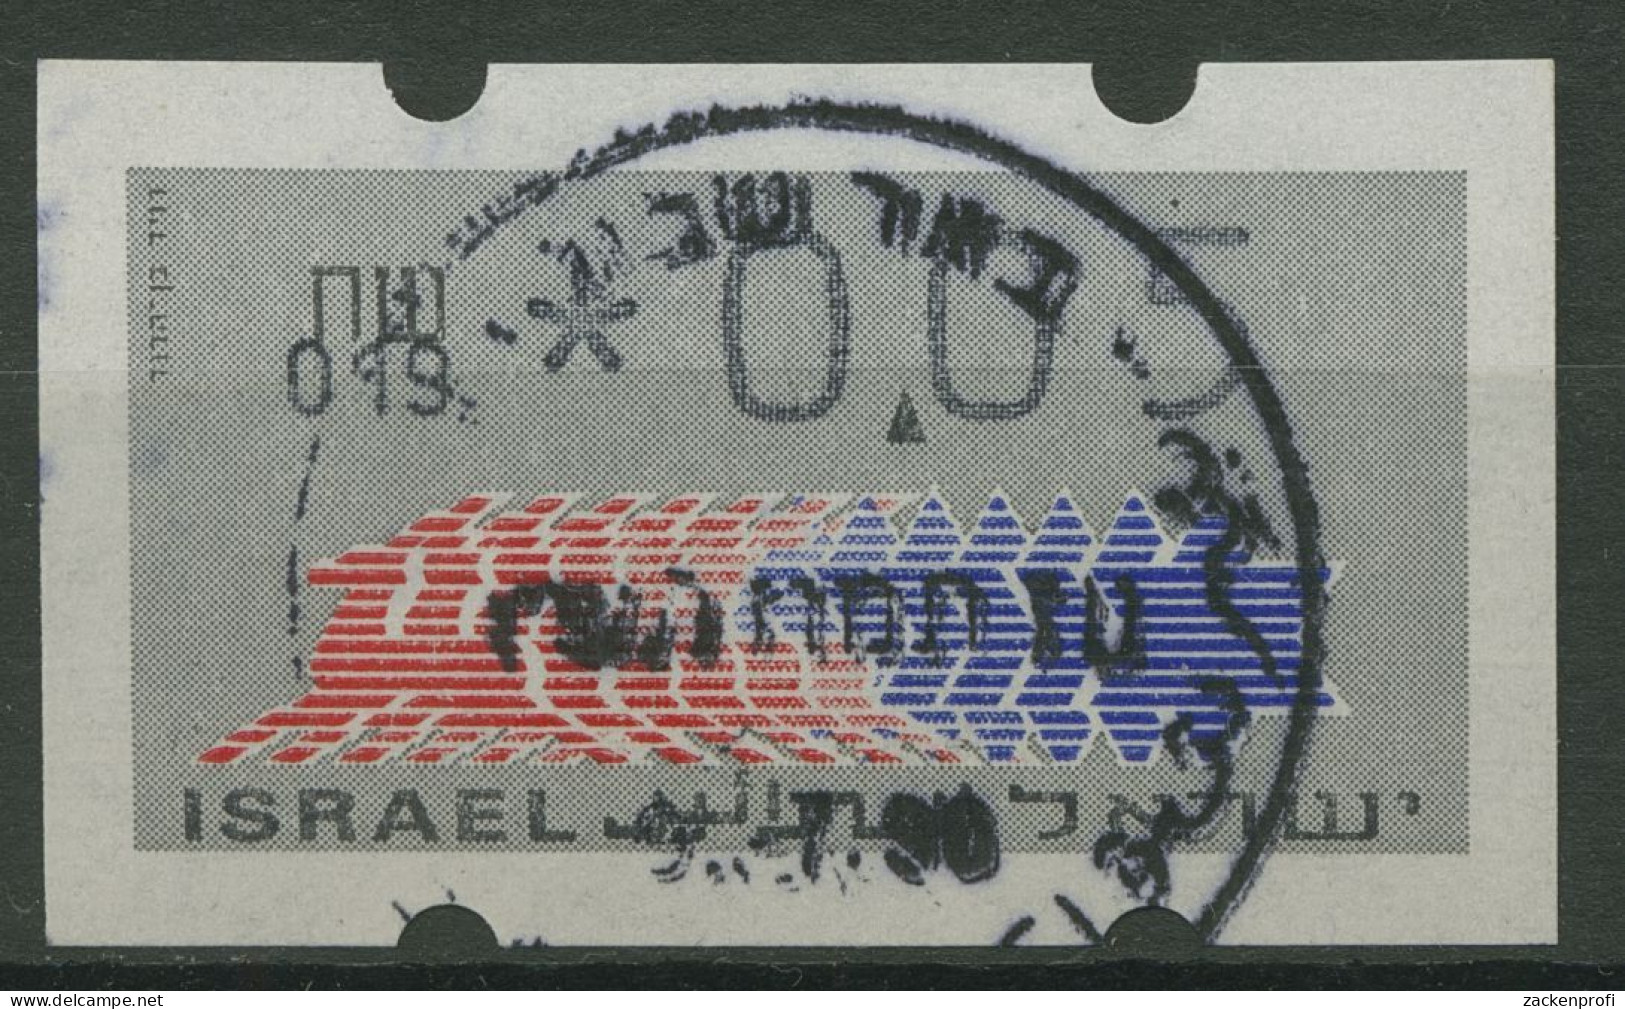 Israel ATM 1990 Hirsch Automat 019 Einzelwert ATM 3.1.19 Gestempelt - Frankeervignetten (Frama)